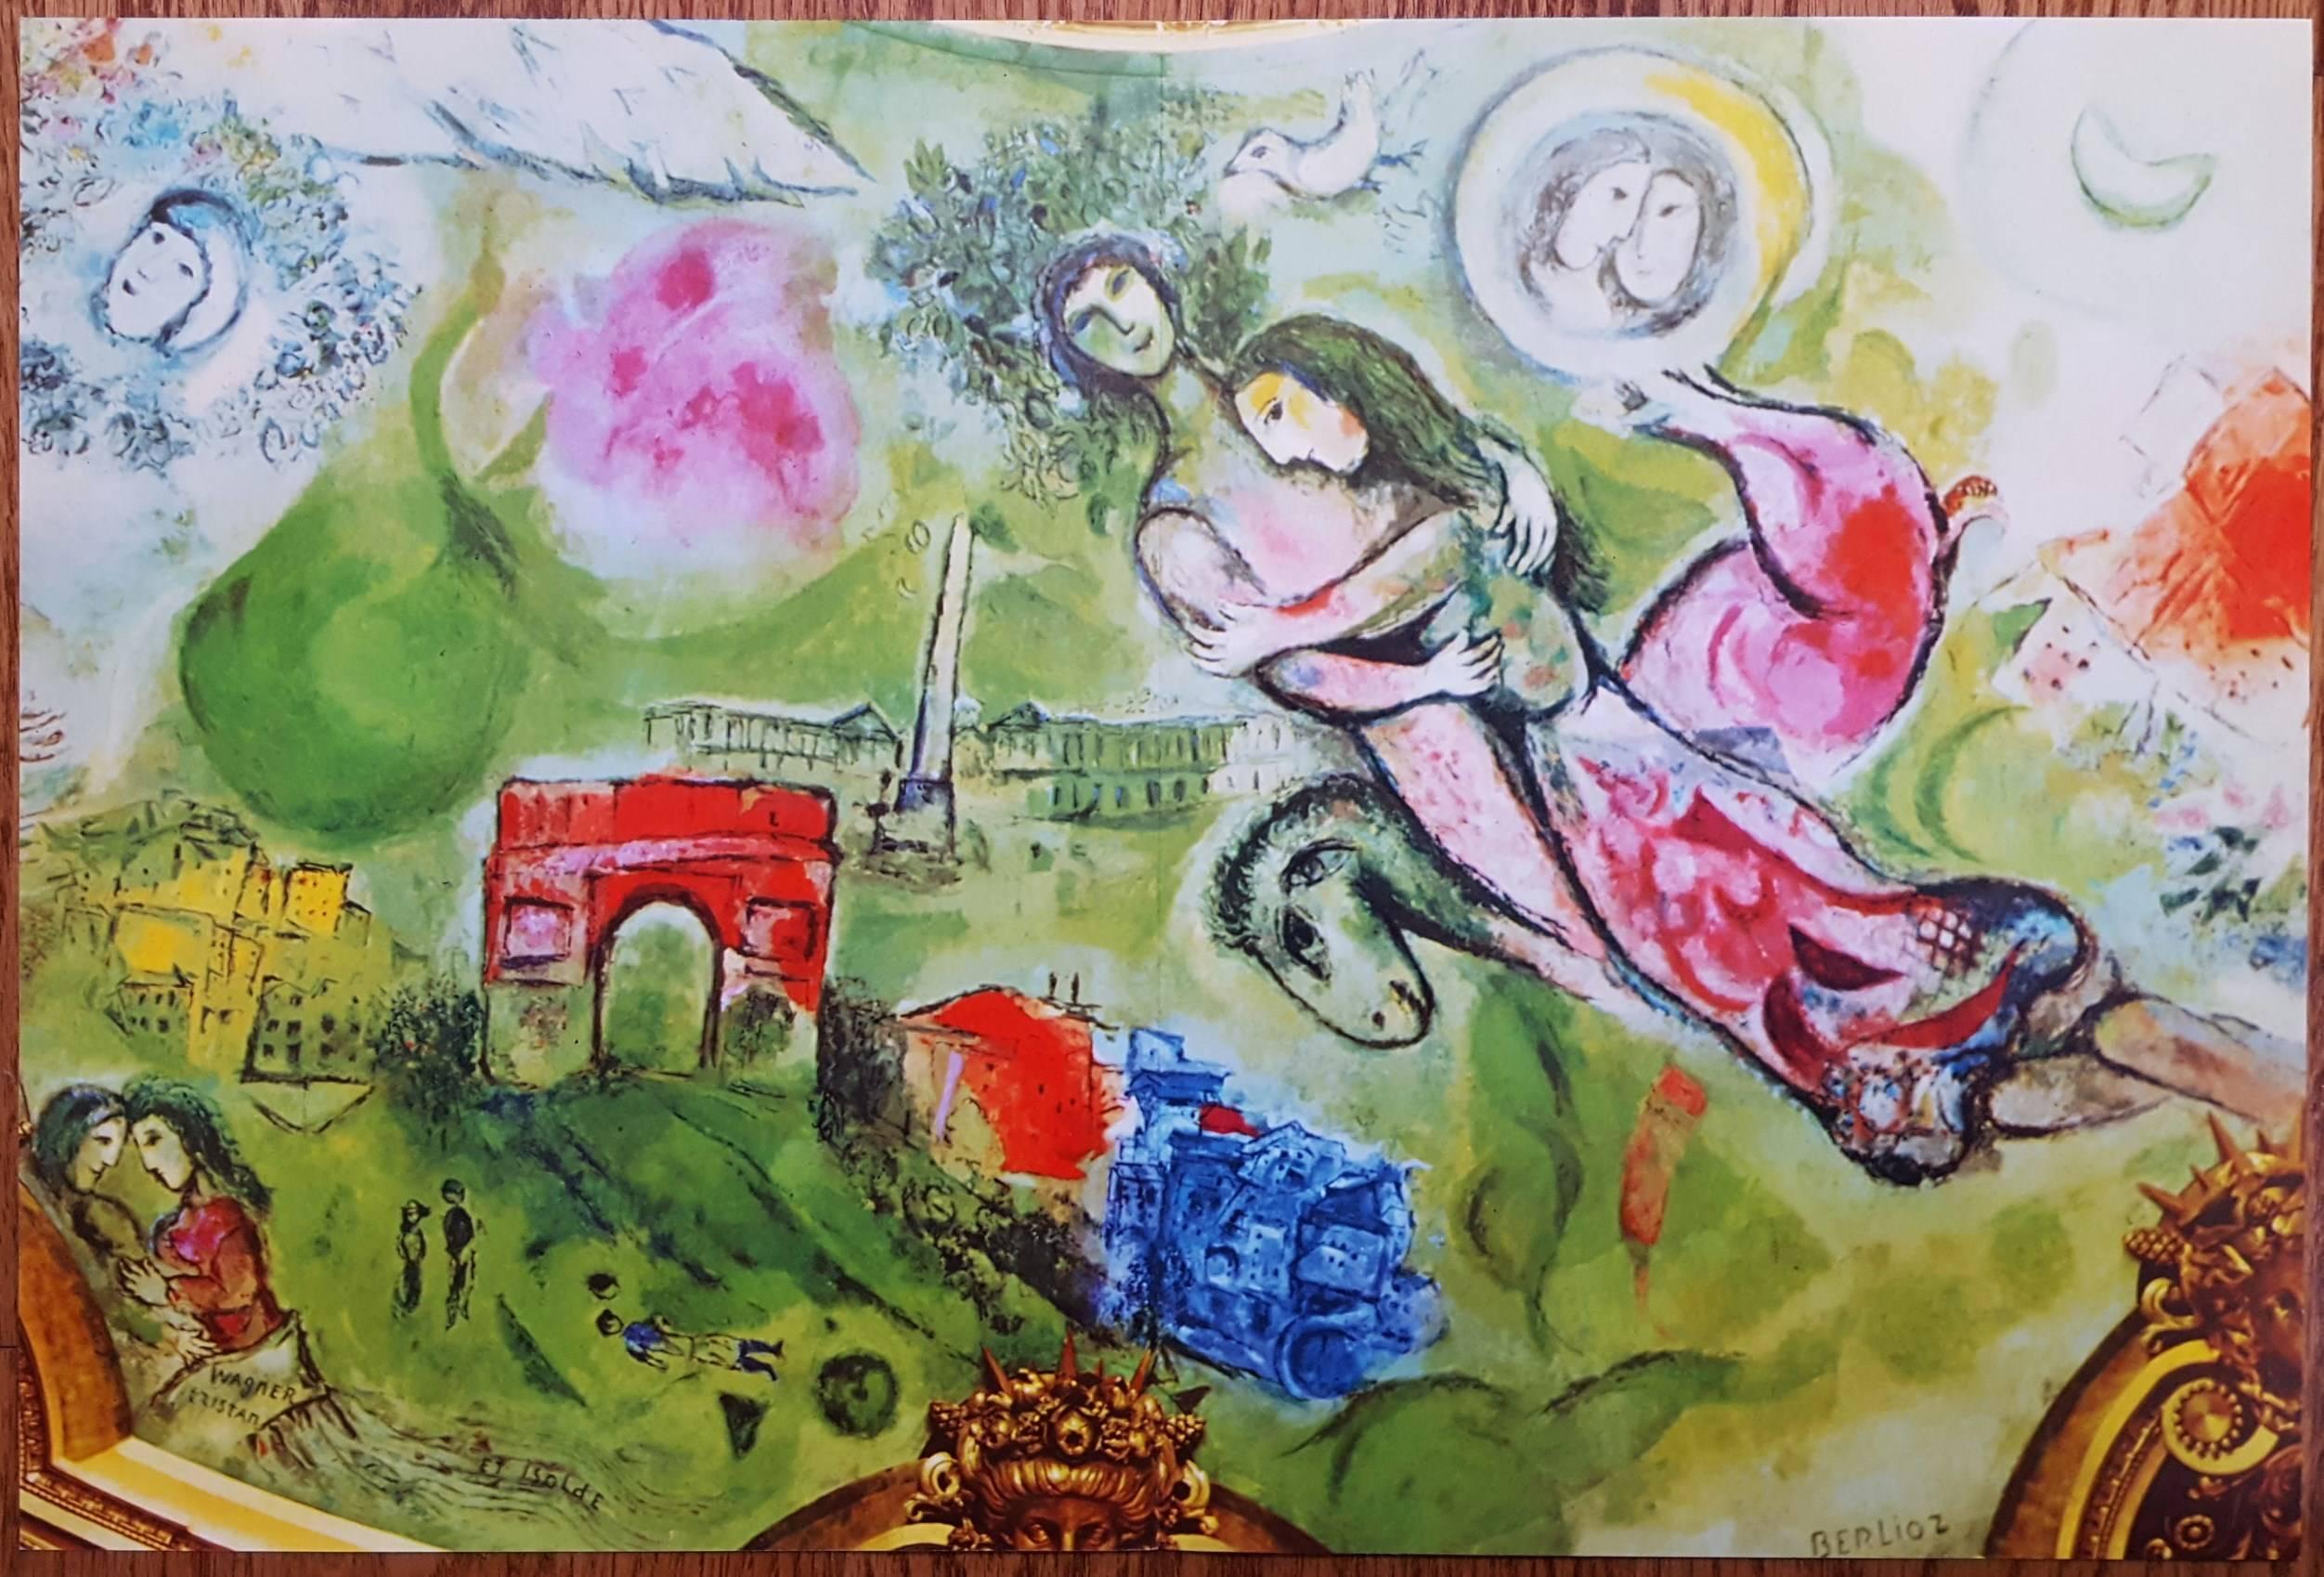 Eine Gruppe von 8 Offset- und Originallithografien auf glattem Velin nach dem russisch-französischen Künstler Marc Chagall (1887-1985) mit verschiedenen Titeln aus den Jahren 1950-1980. In der Gruppe enthalten sind 